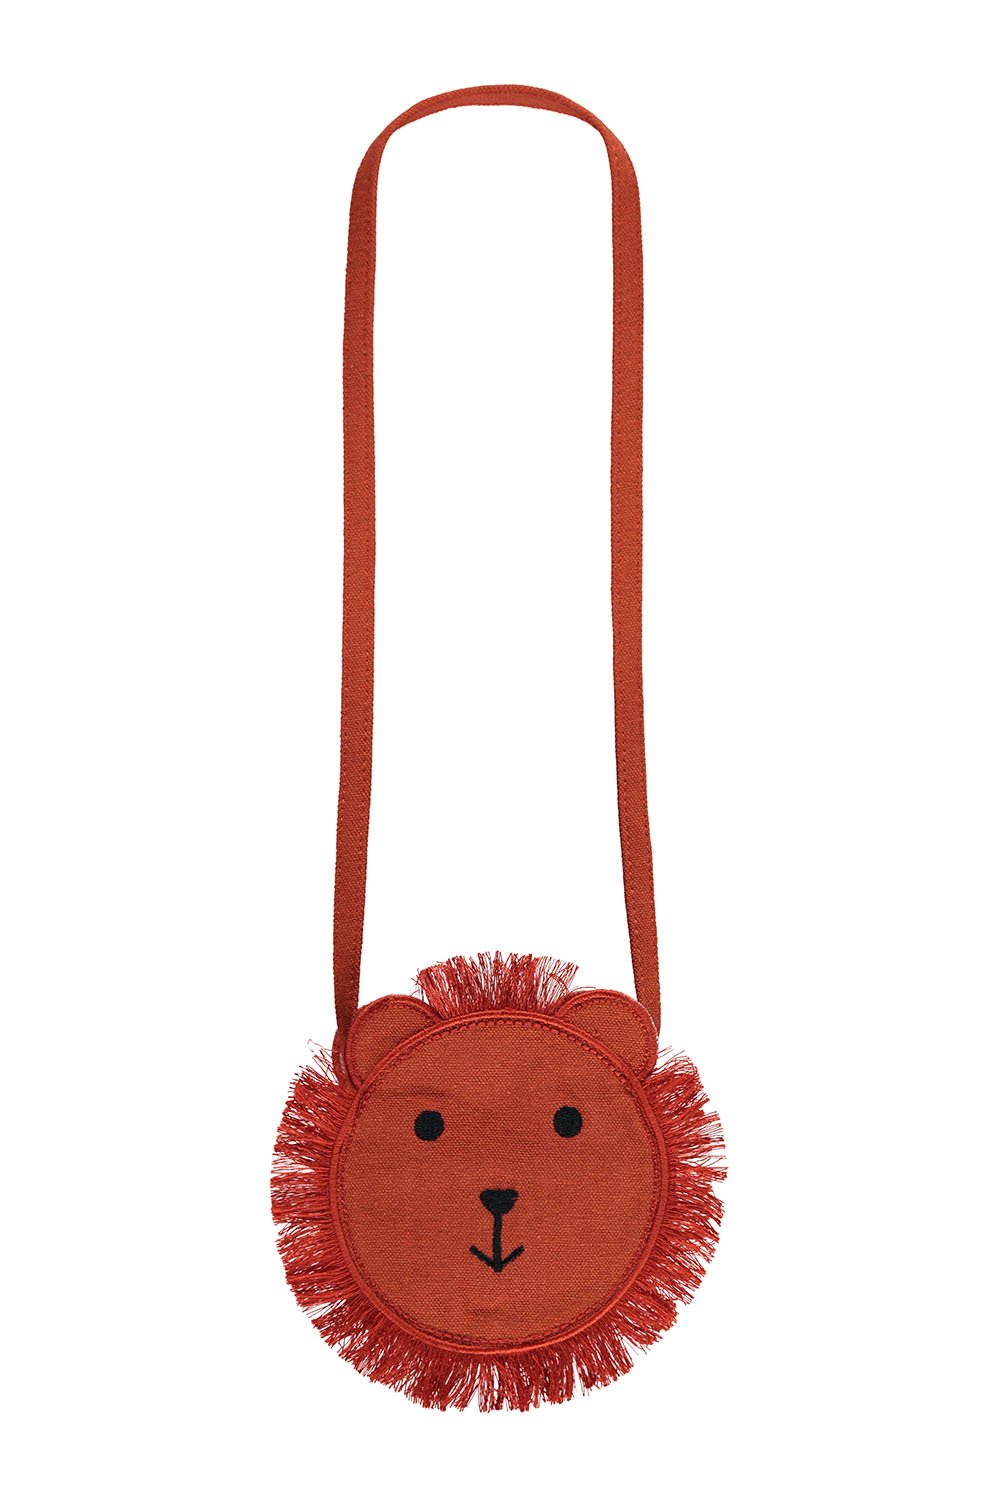 Meisjes Little bag lion van LOOXS Little in de kleur PECAN in maat ONE.